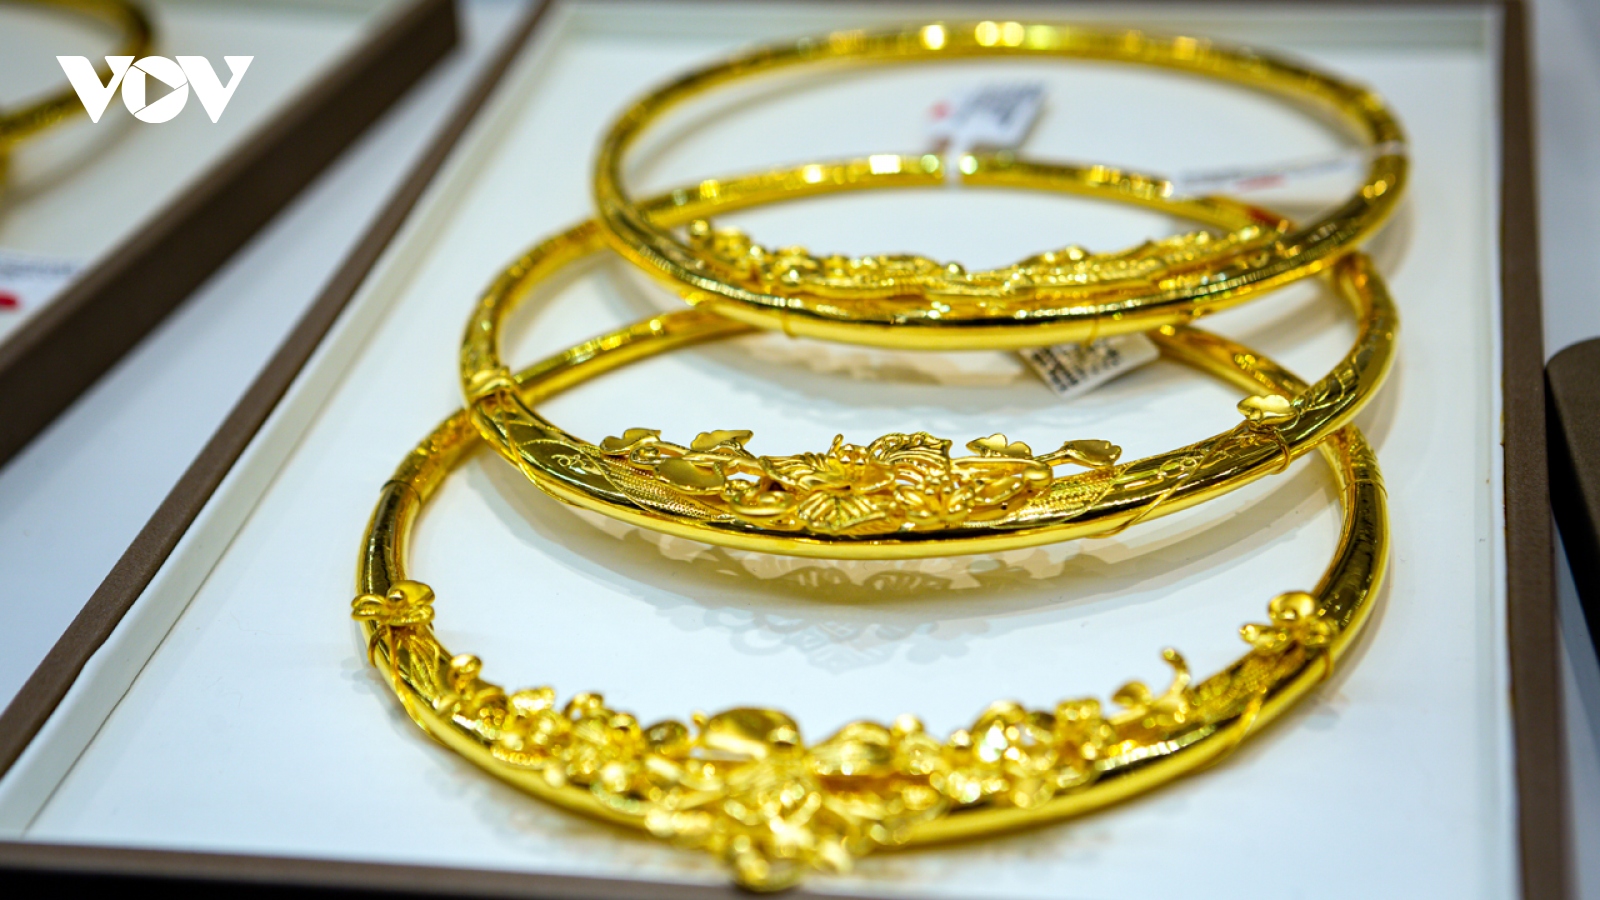 Giá vàng hôm nay 19/8: Vàng SJC tăng nhẹ lên 67,7 triệu đồng/lượng